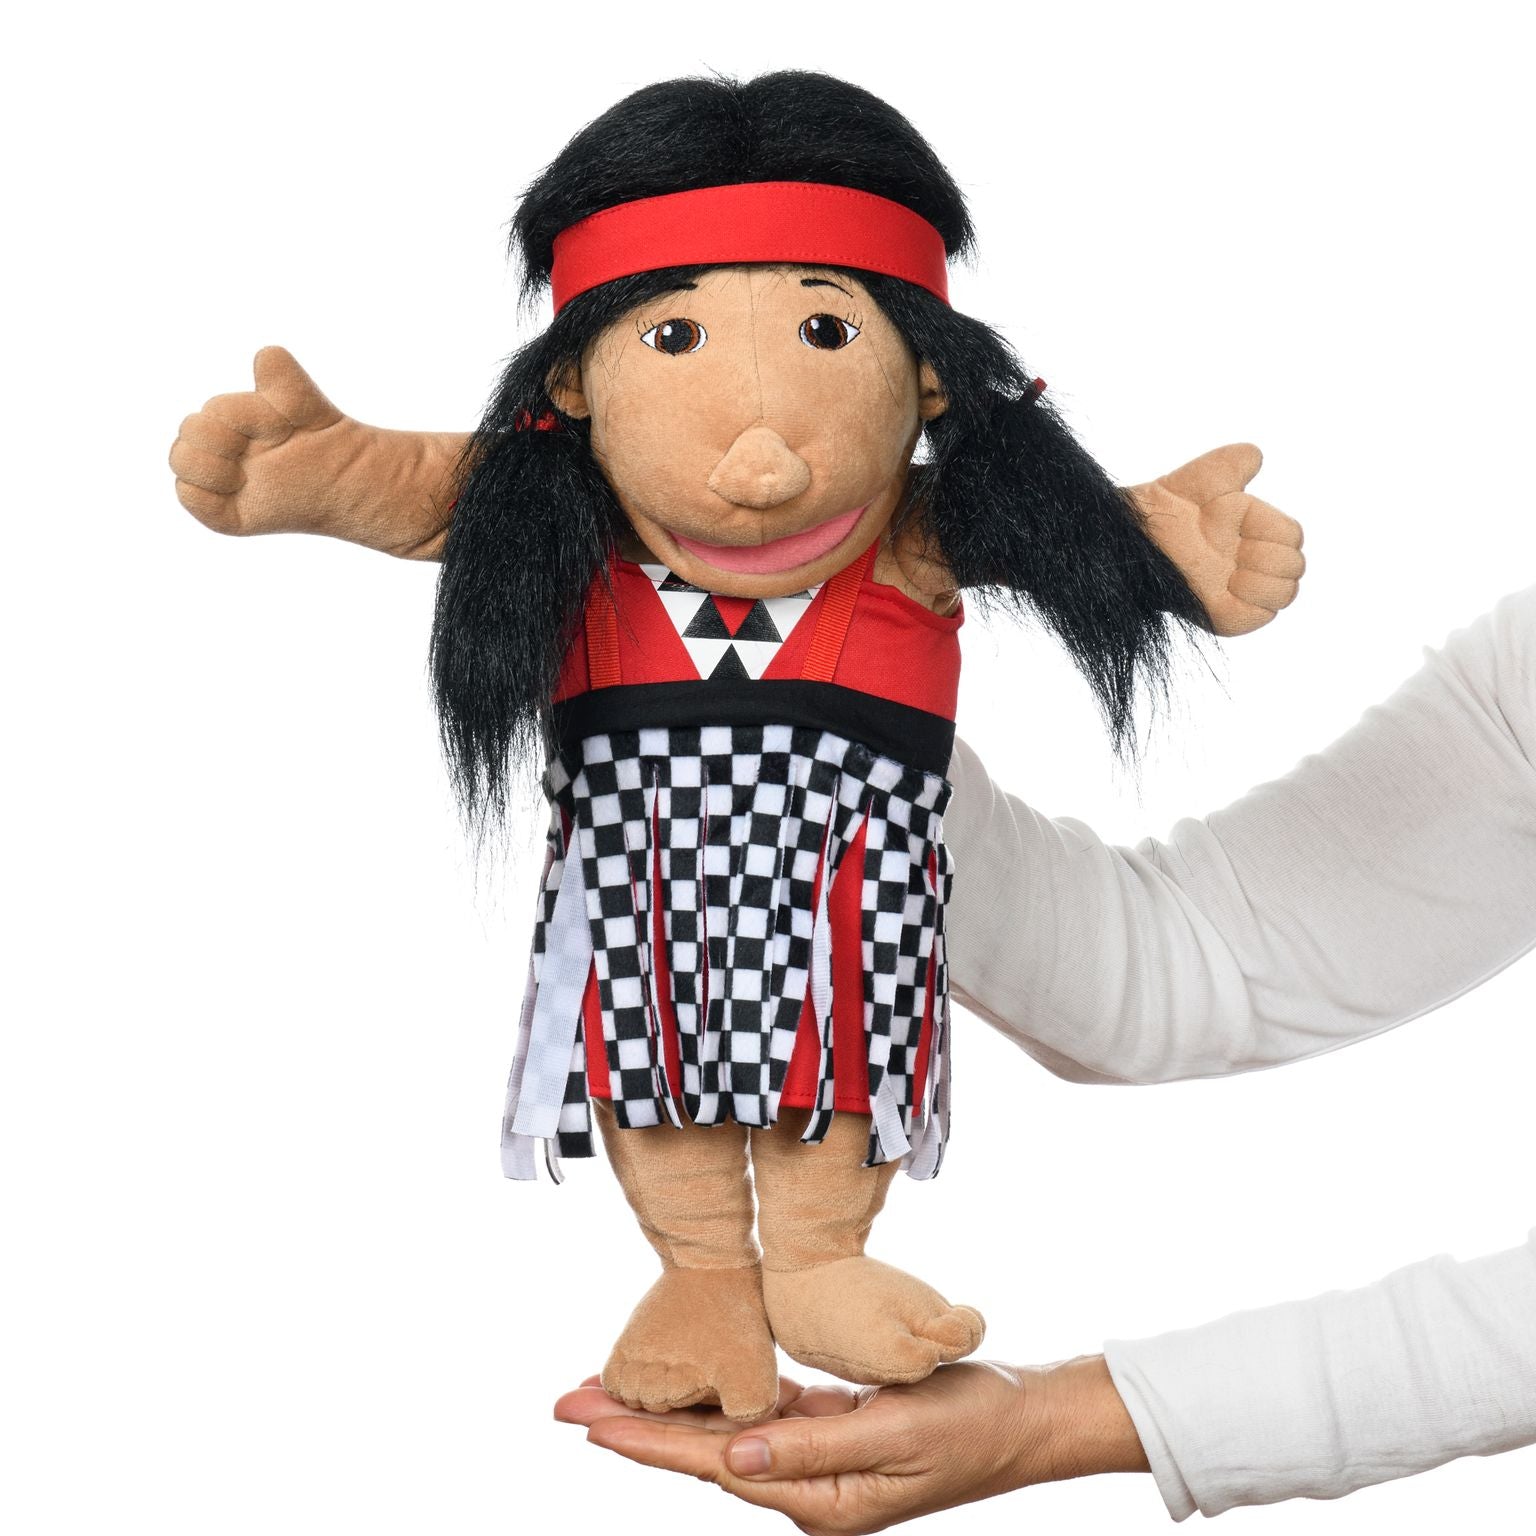 Hand puppet - Girl, Maori costume, New Zealand